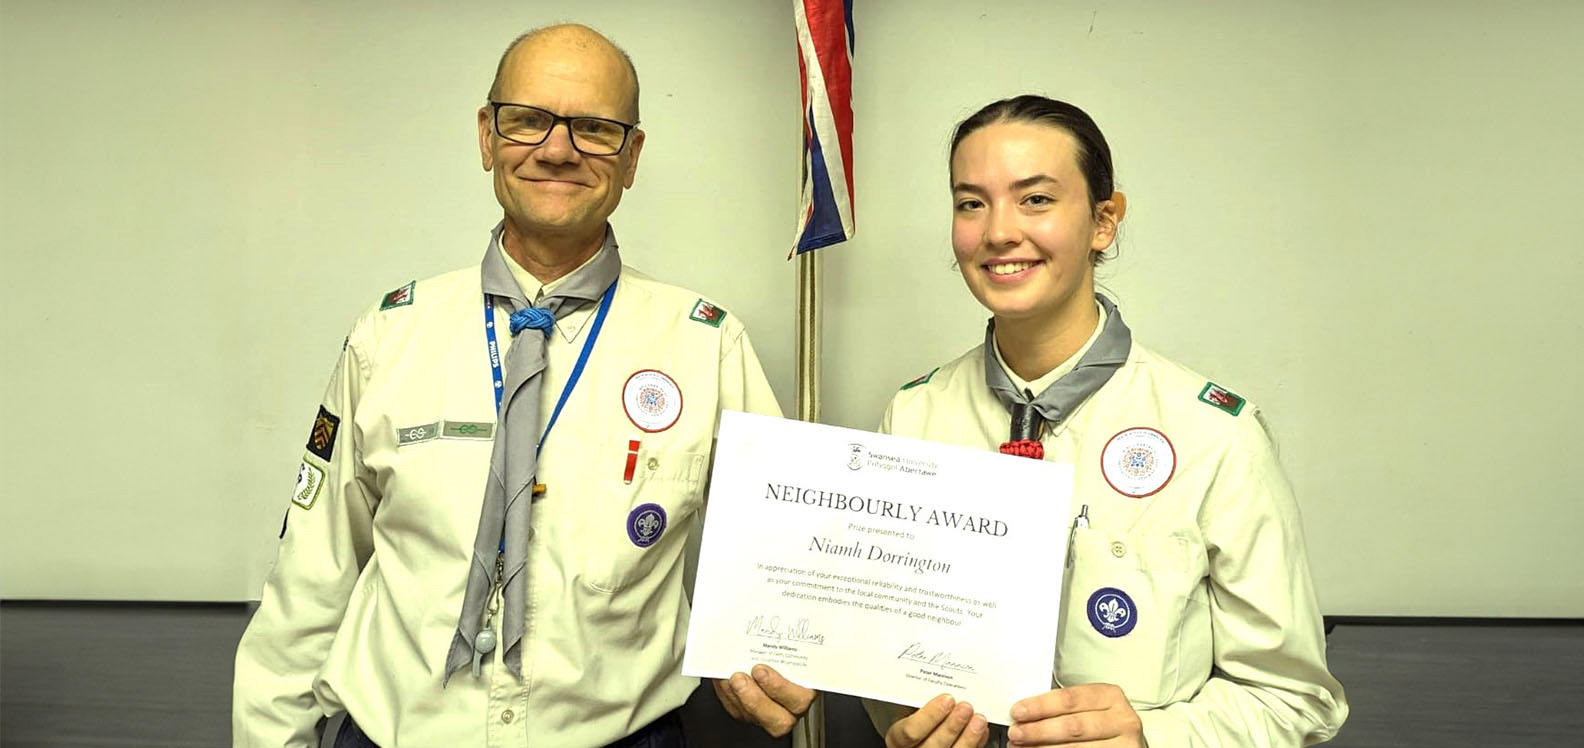 Student Niamh Dorrington receiving her Neighbourly Award certificate from Scout Leader Ben Ball.